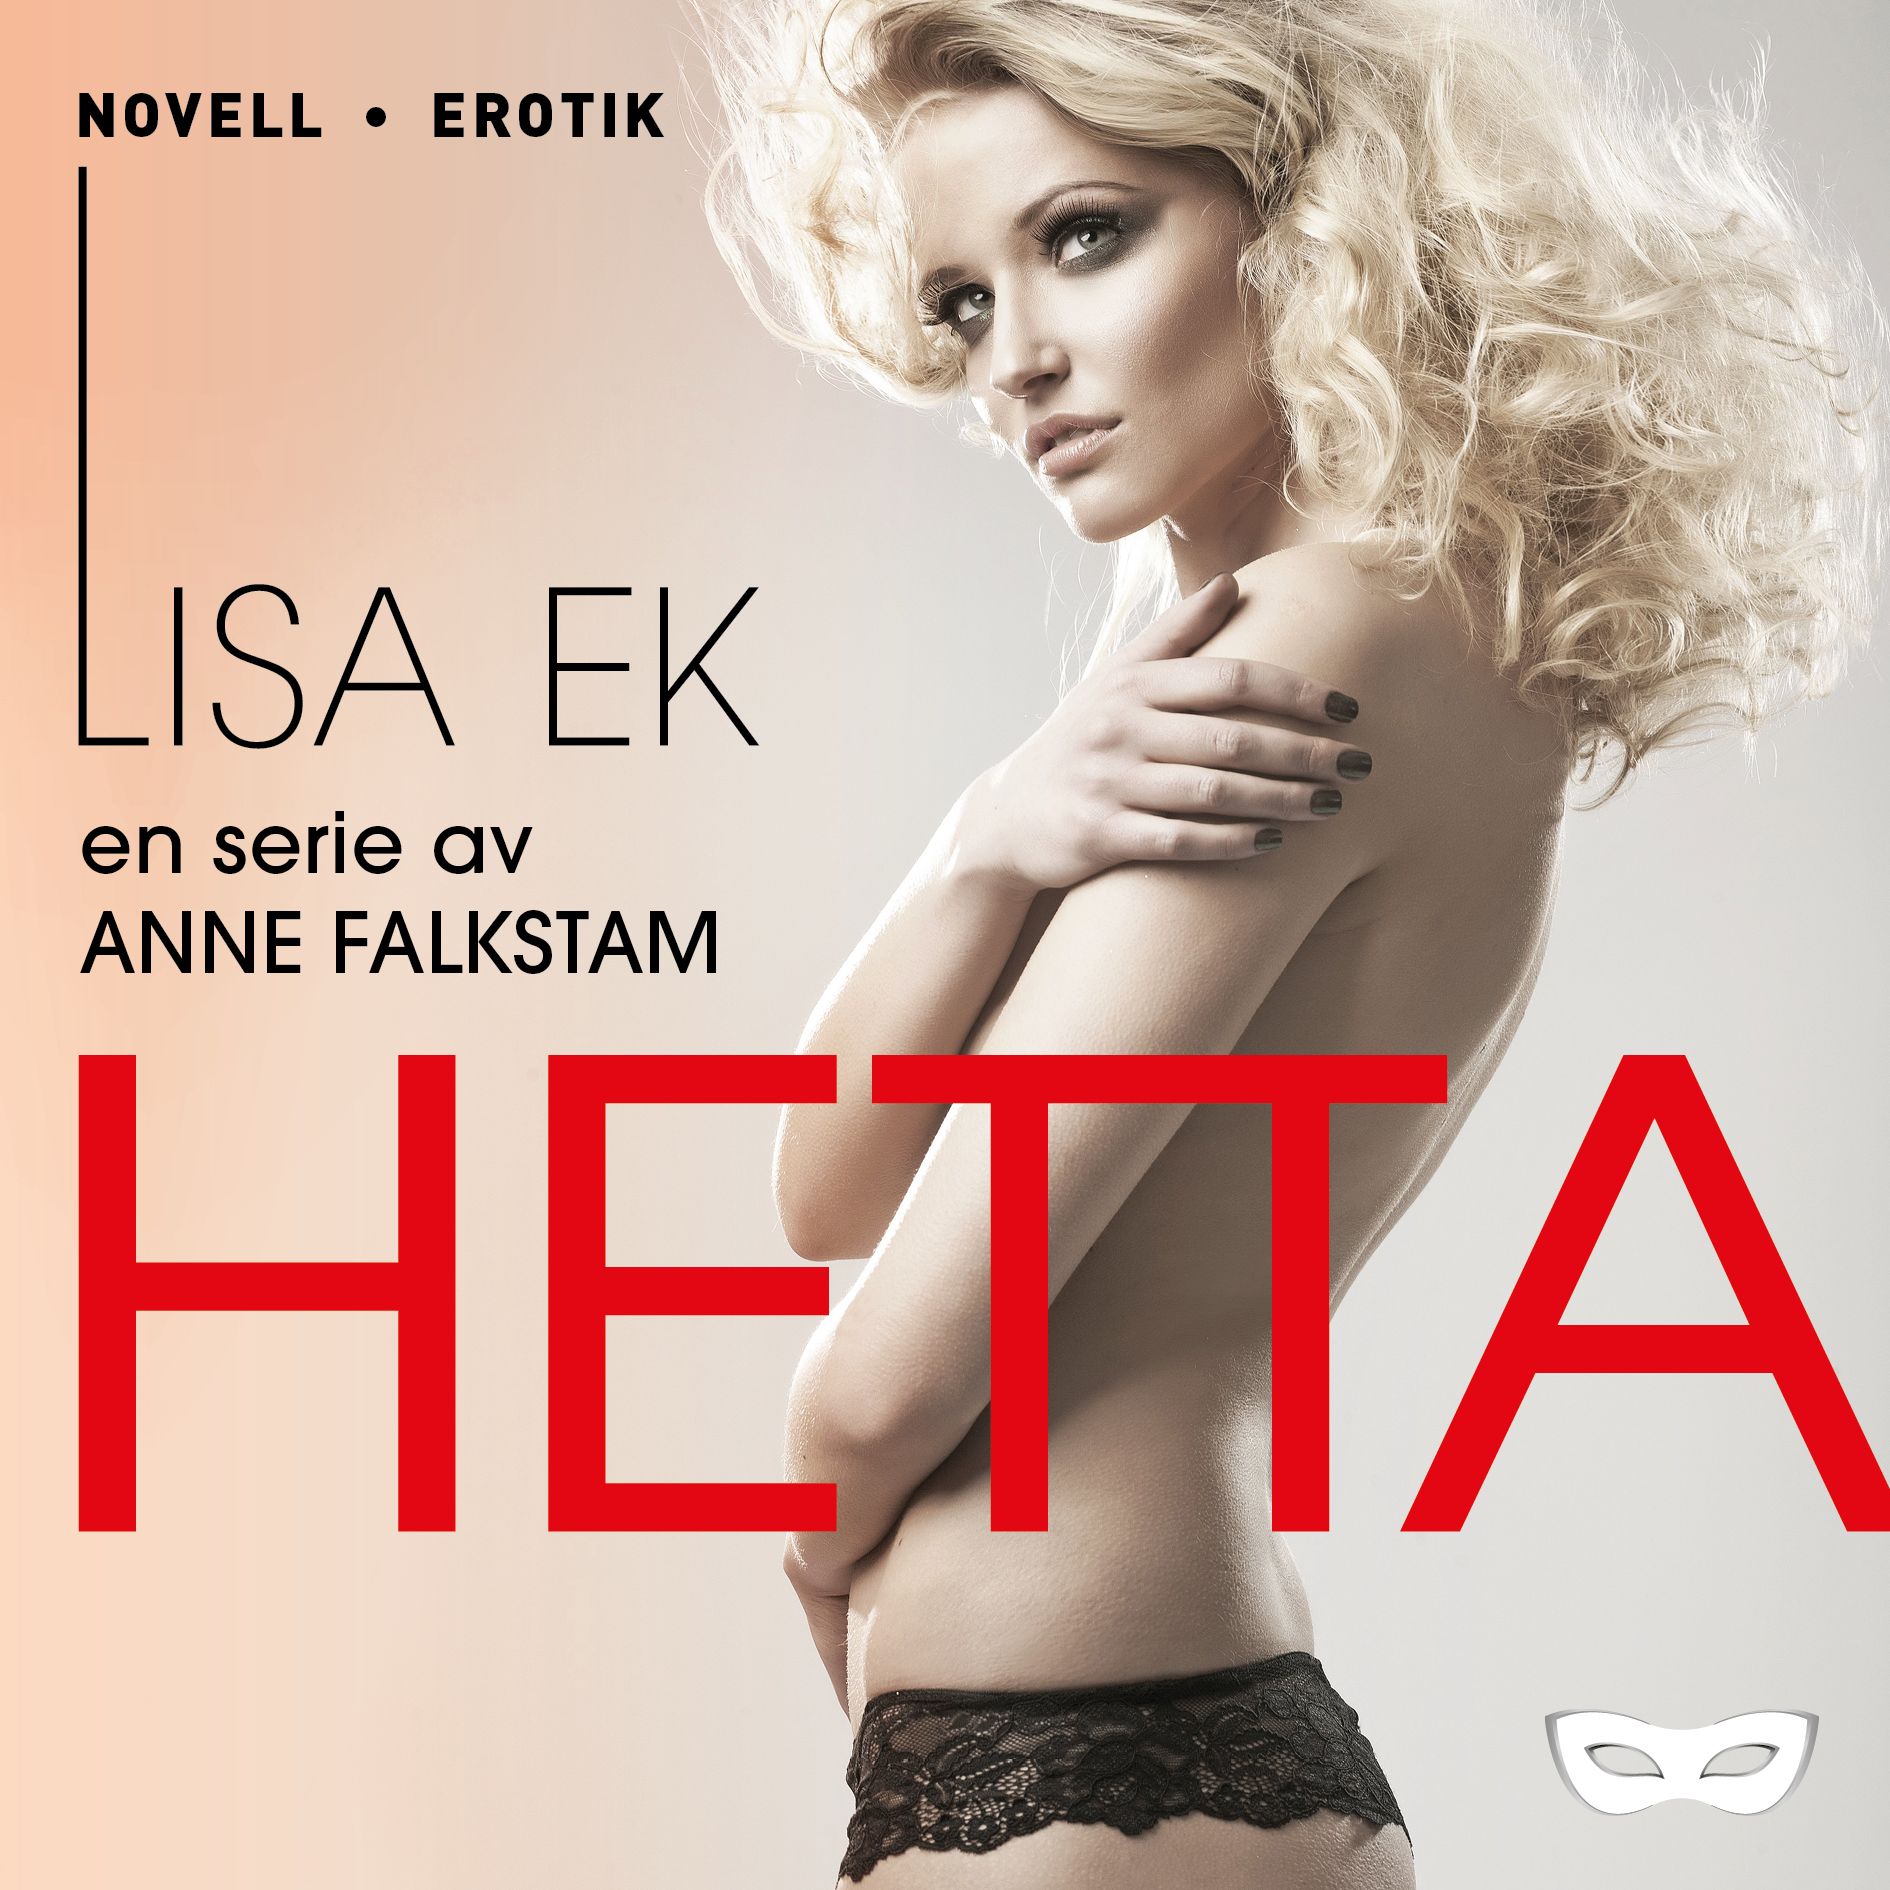 Hetta, ljudbok av Anne Falkstam